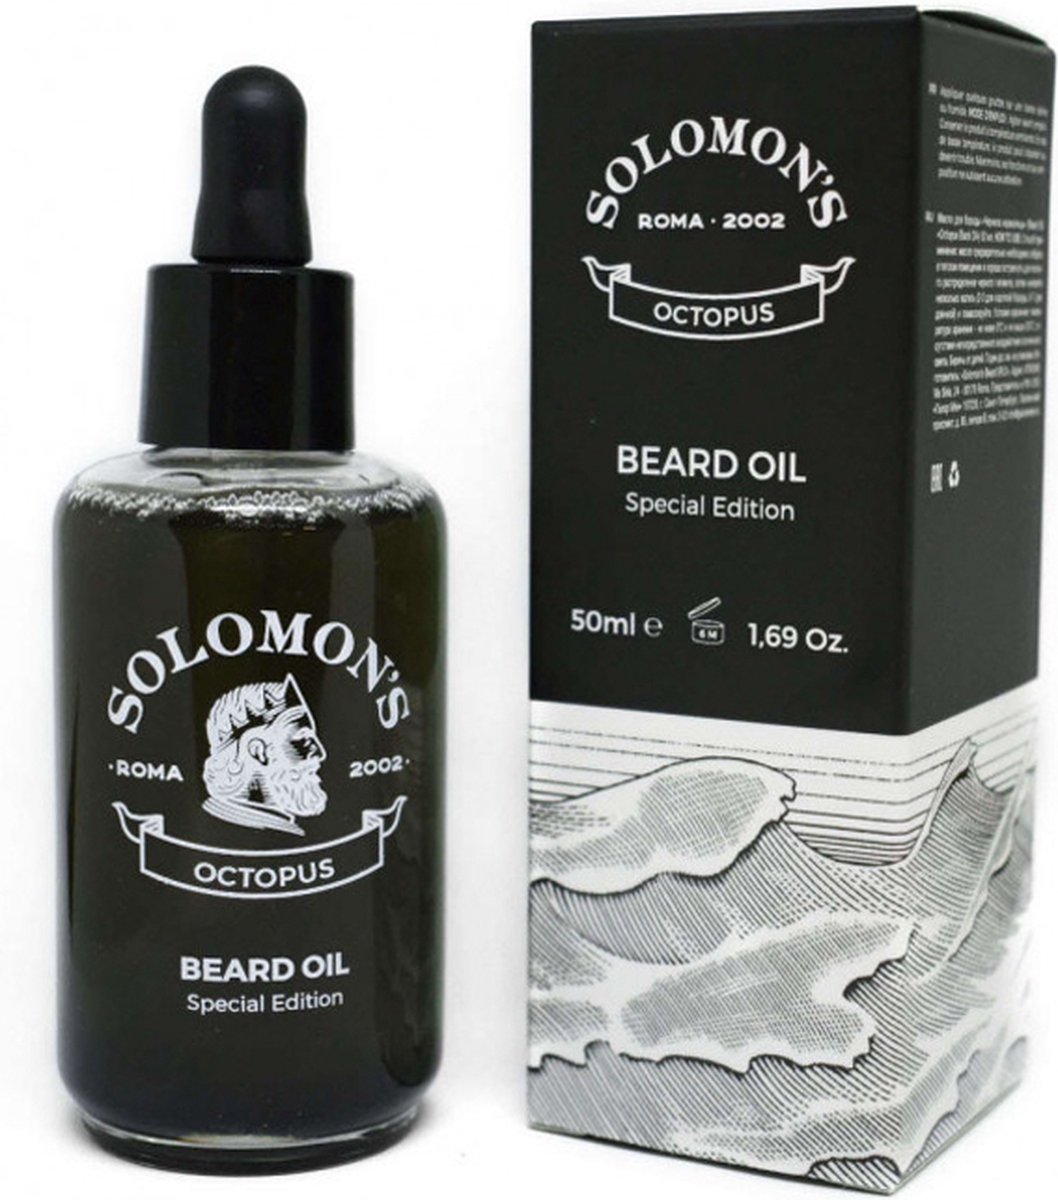 Solomon's Beard Oil Octopus 50ml